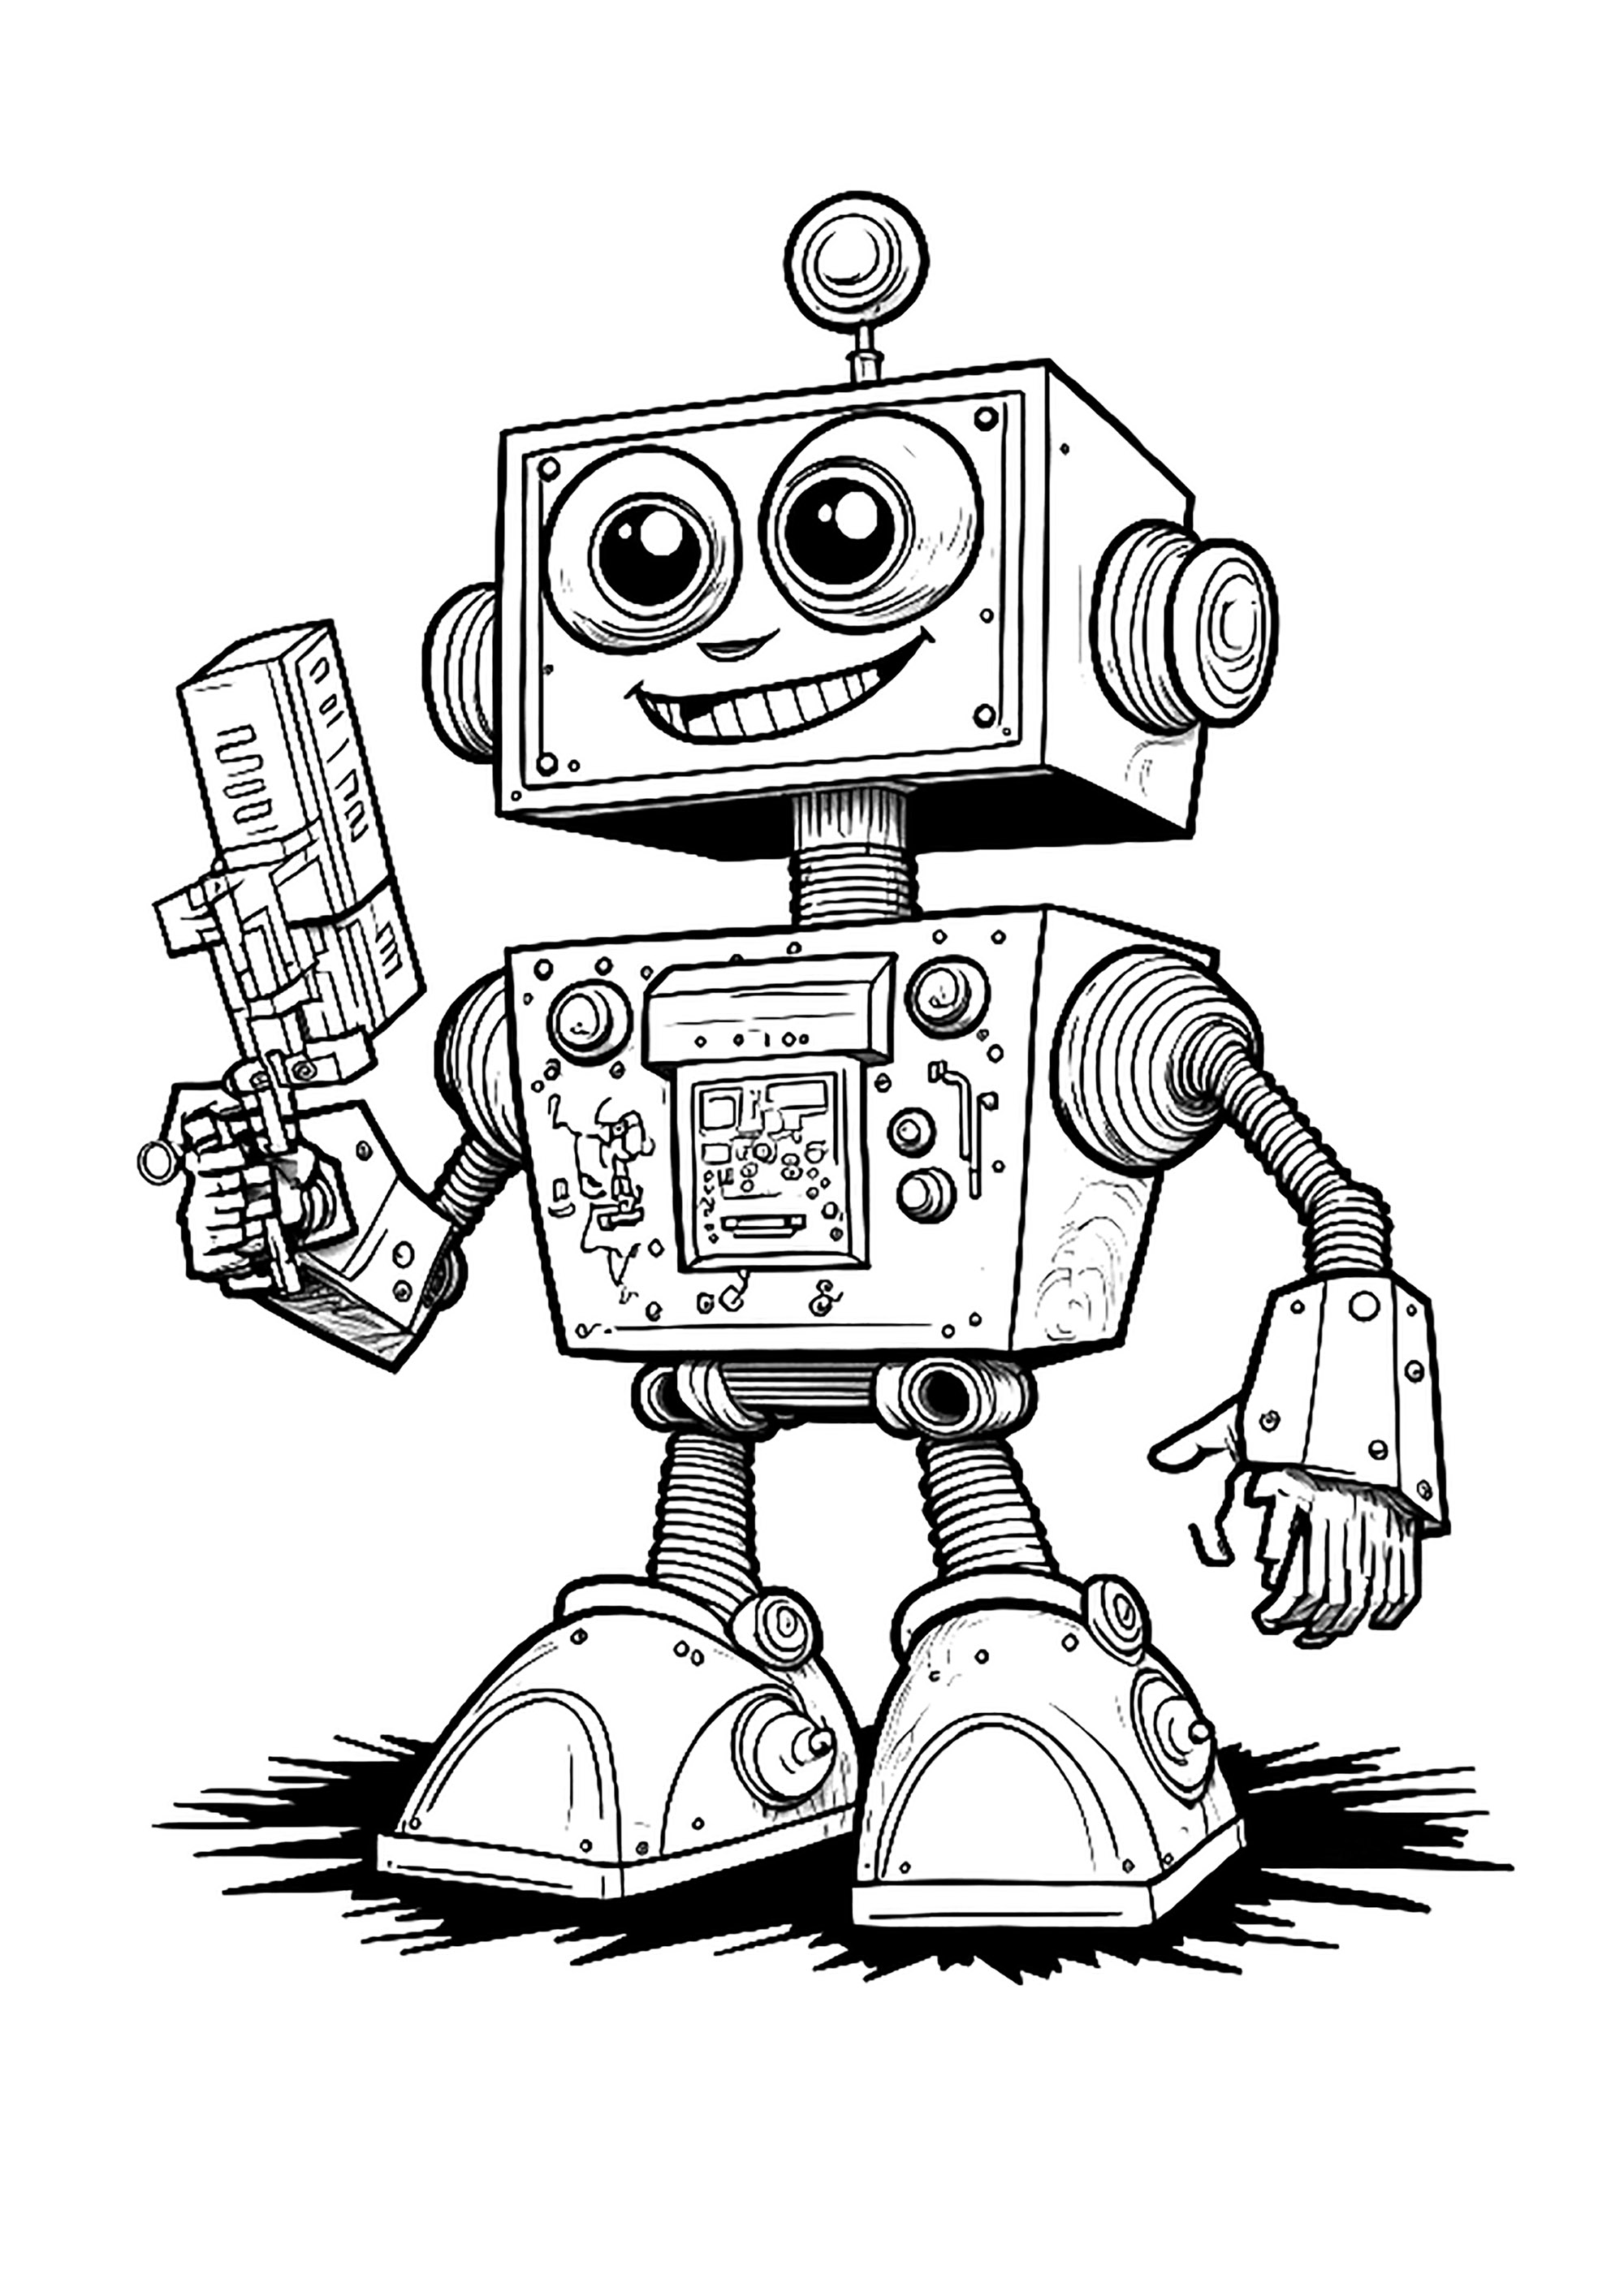 Joli robot du style de ceux des années 80